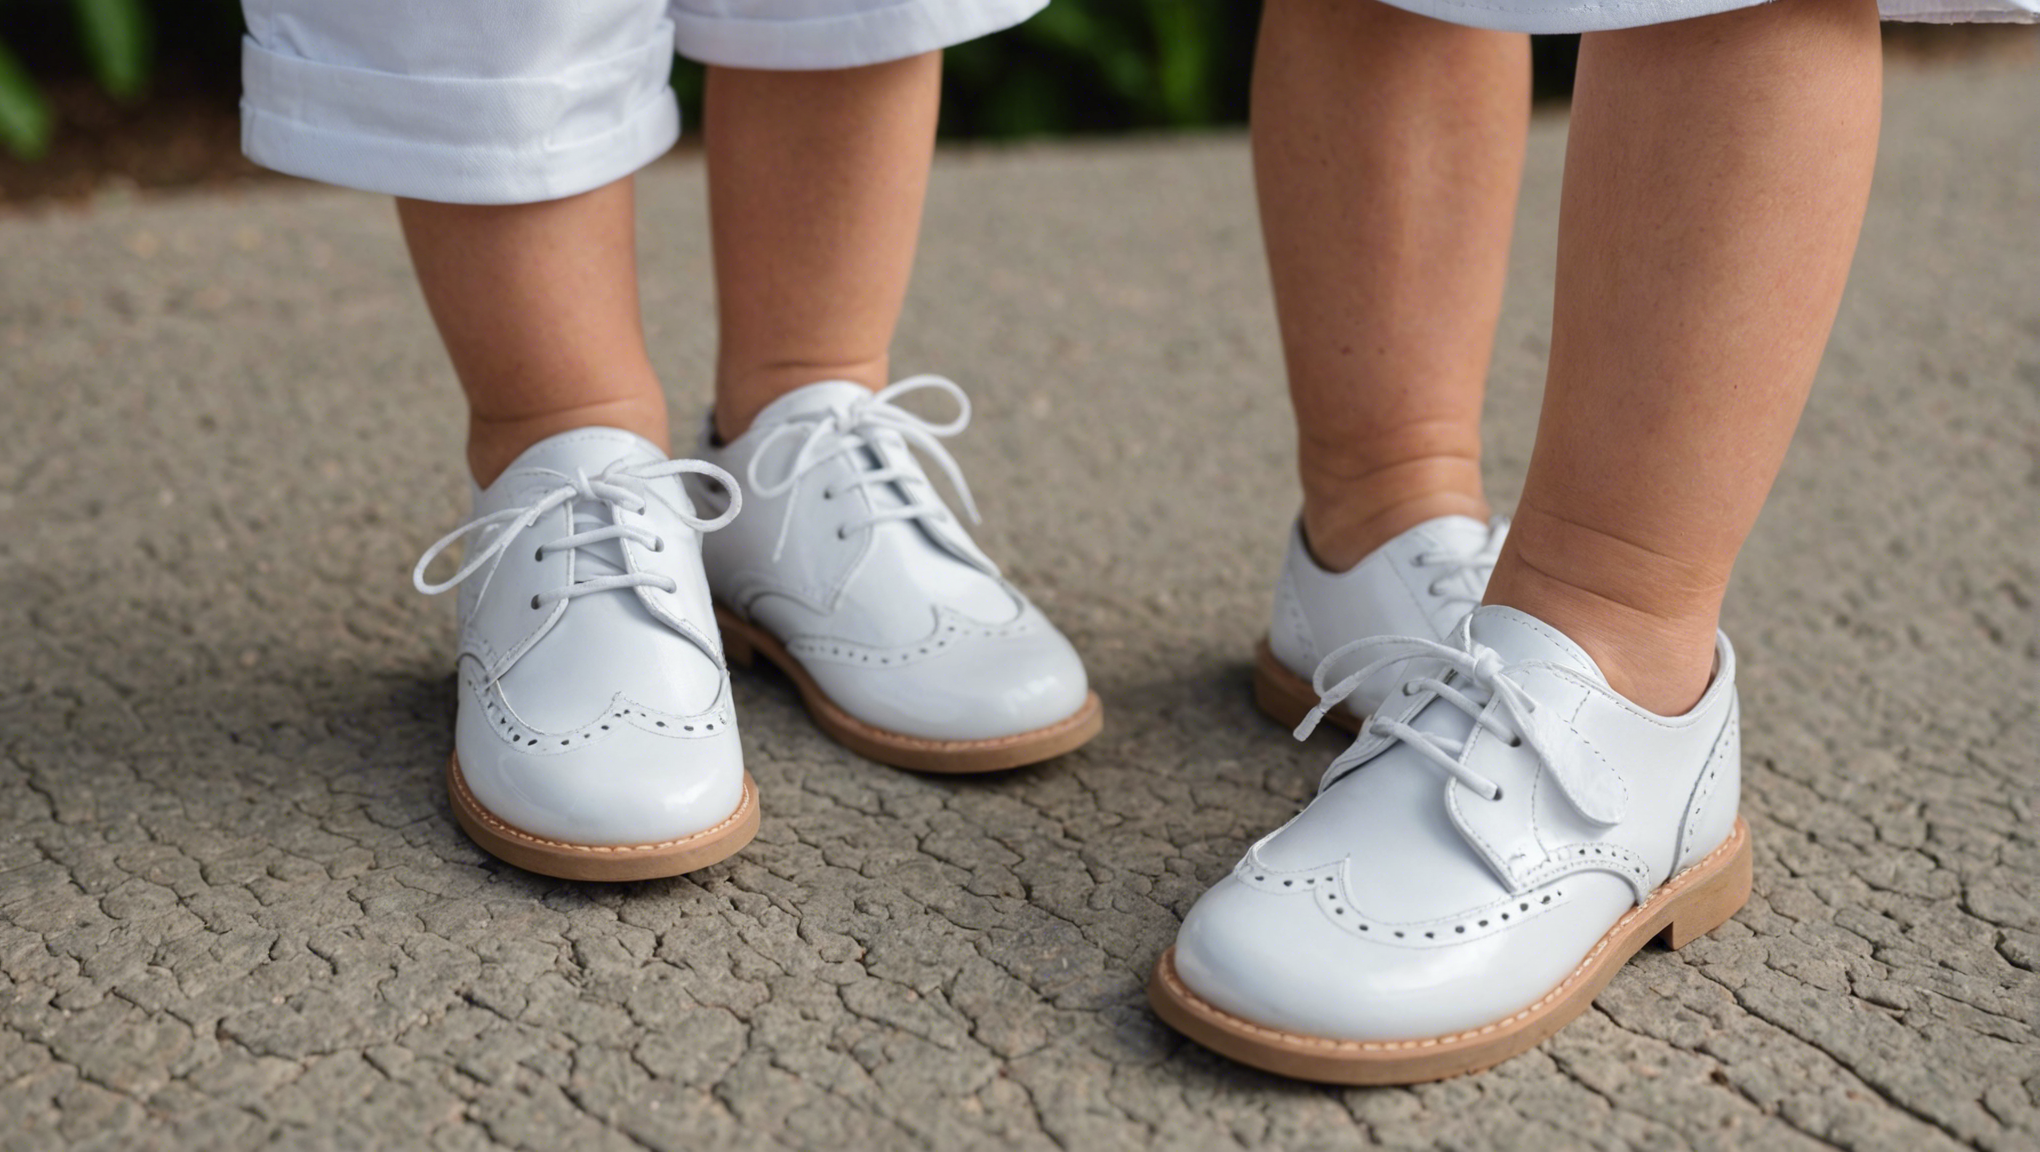 découvrez comment choisir les chaussures parfaites pour le baptême d'un garçon avec nos conseils et idées de tenues.